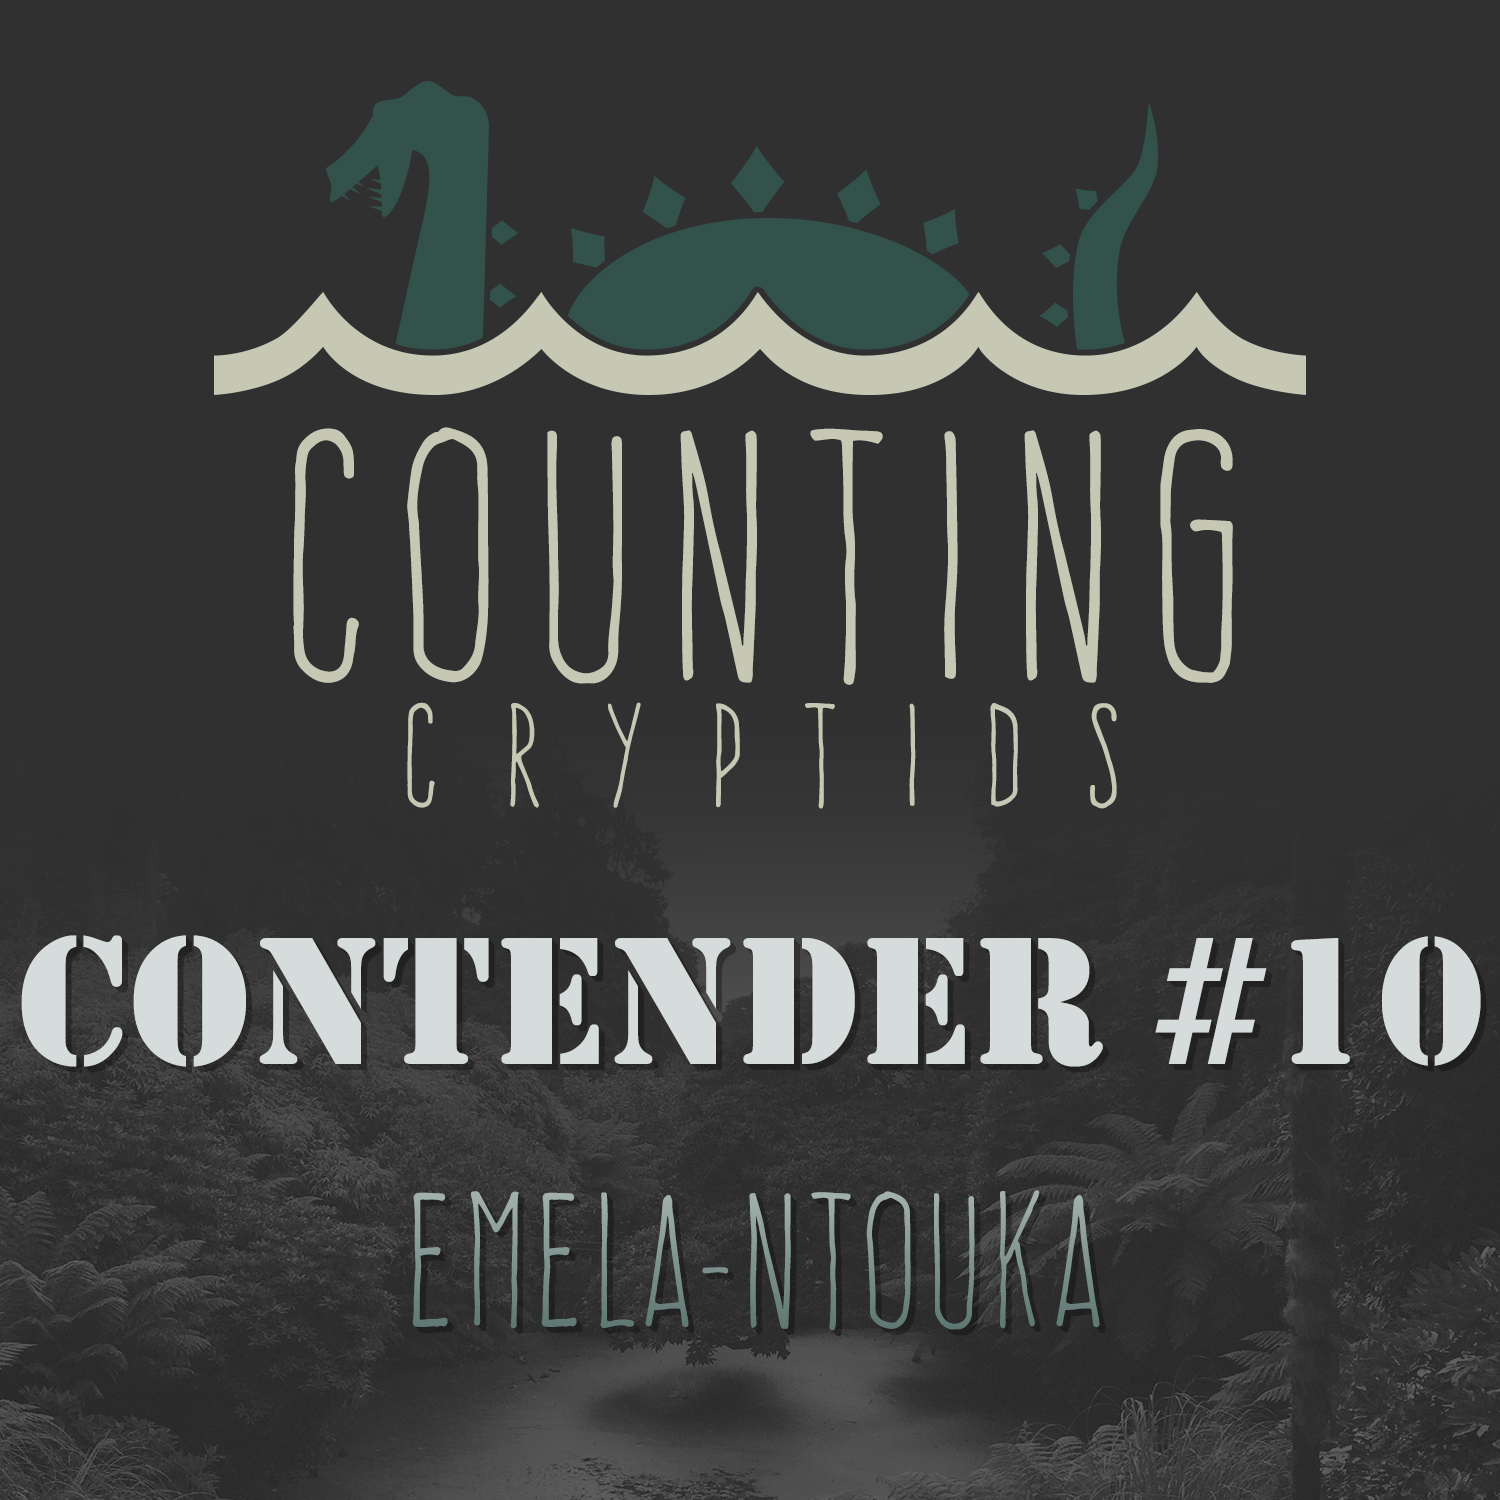 Contender #10 - Emela-Ntouka